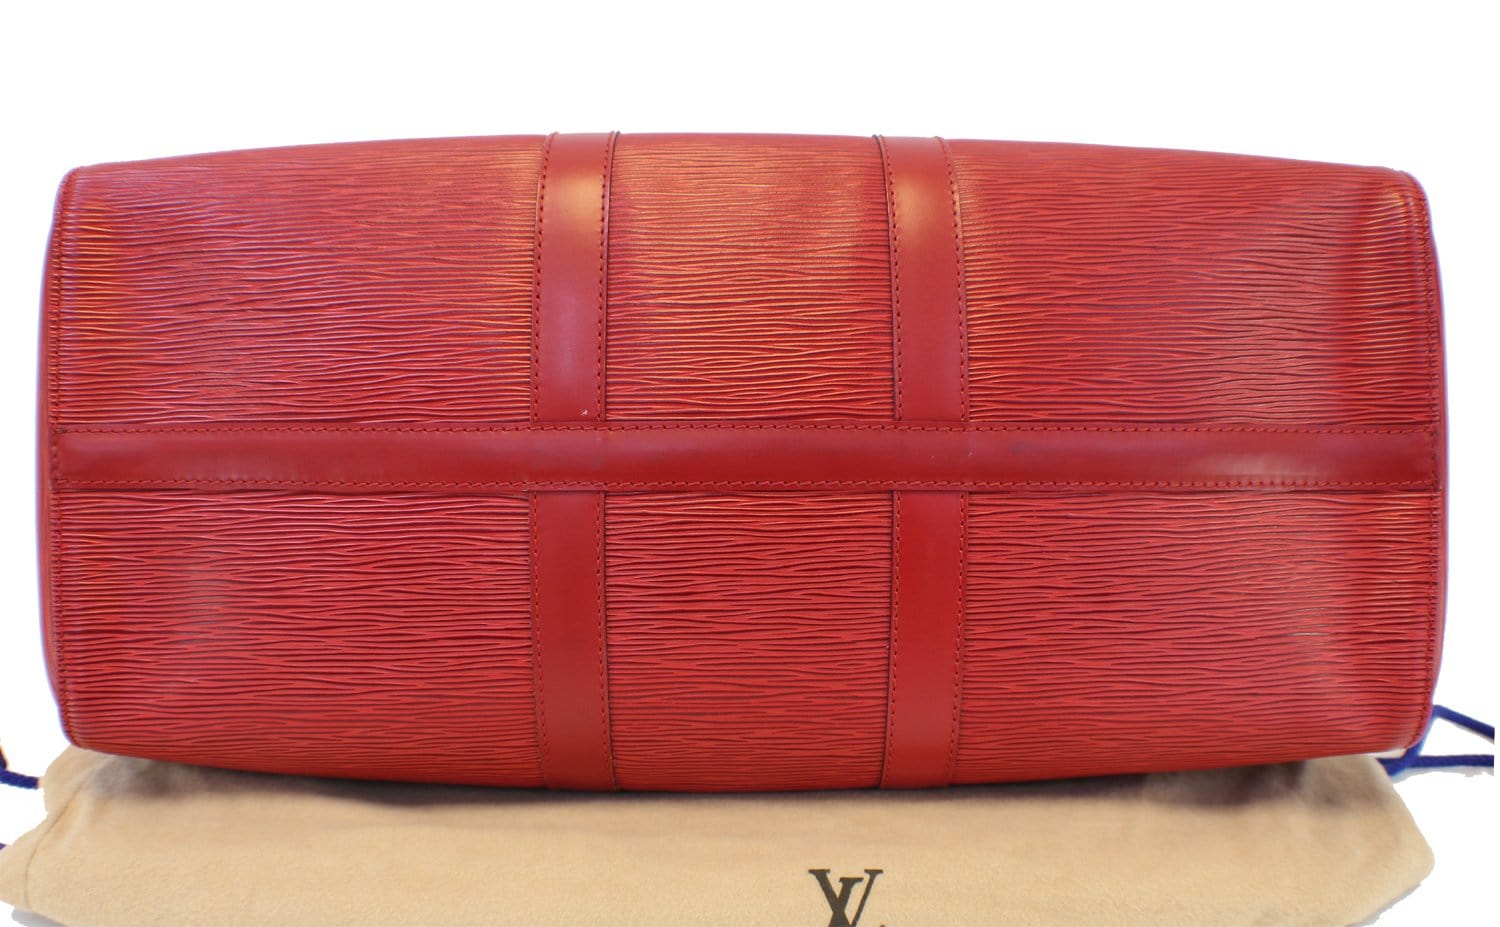 LV Red Epi Leather Soufflot Bag